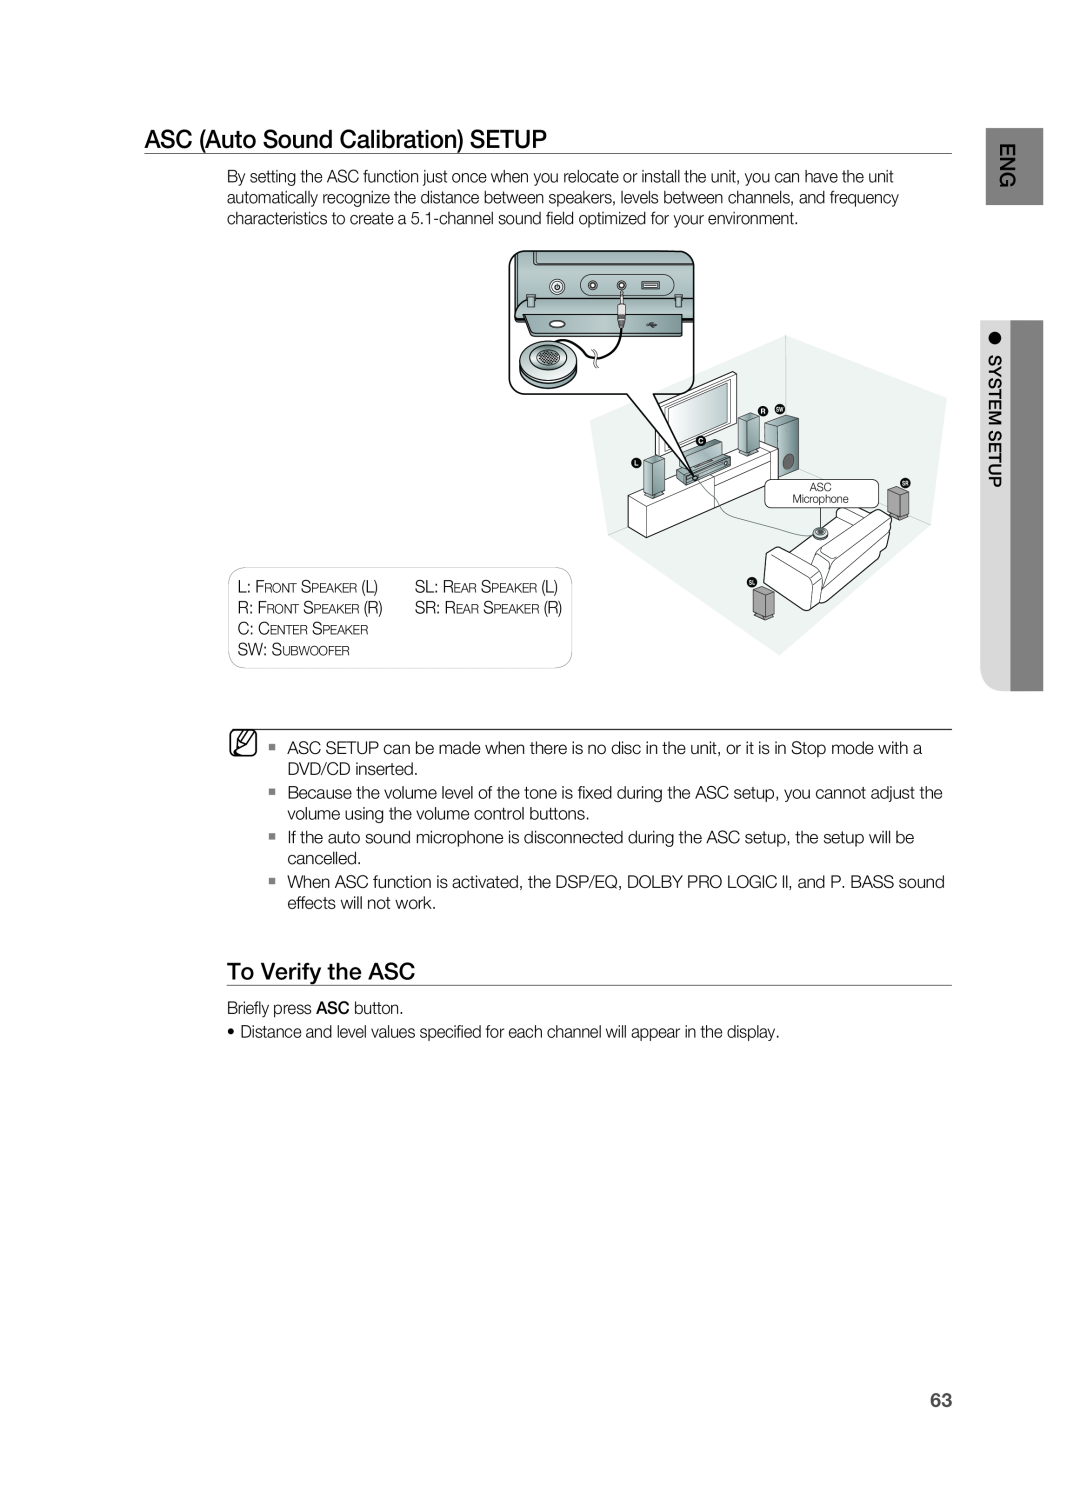 Samsung HT-Z510 manual ASC Auto Sound Calibration SETUP, To Verify the ASC 